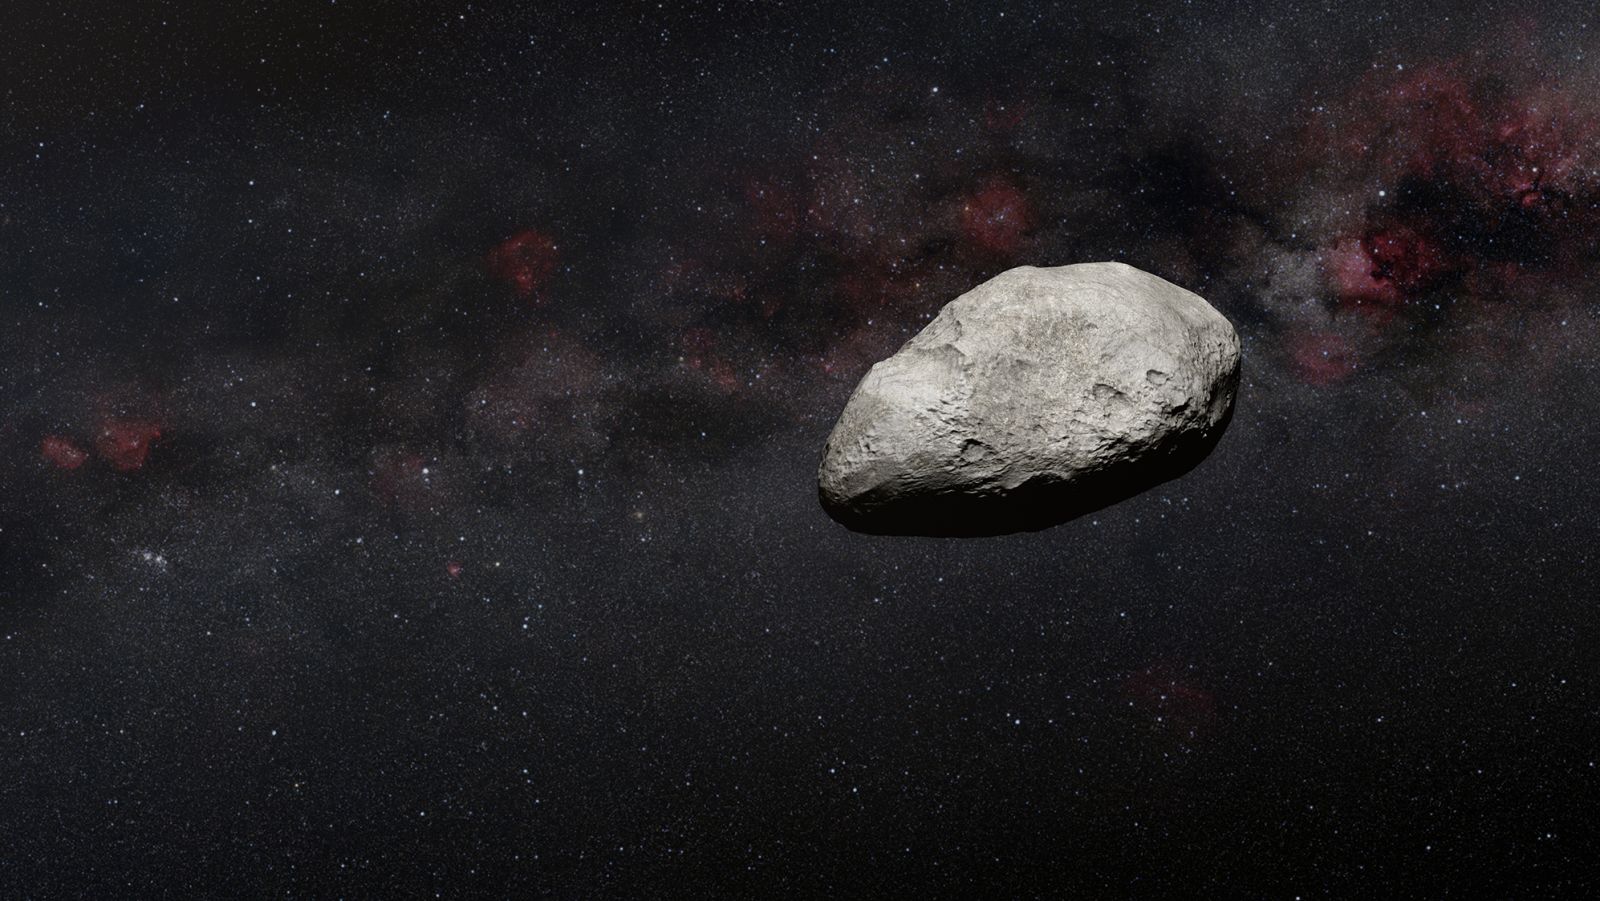 La ilustración de un artista muestra un asteroide gris de forma irregular similar al nuevo objeto detectado por el telescopio Webb.